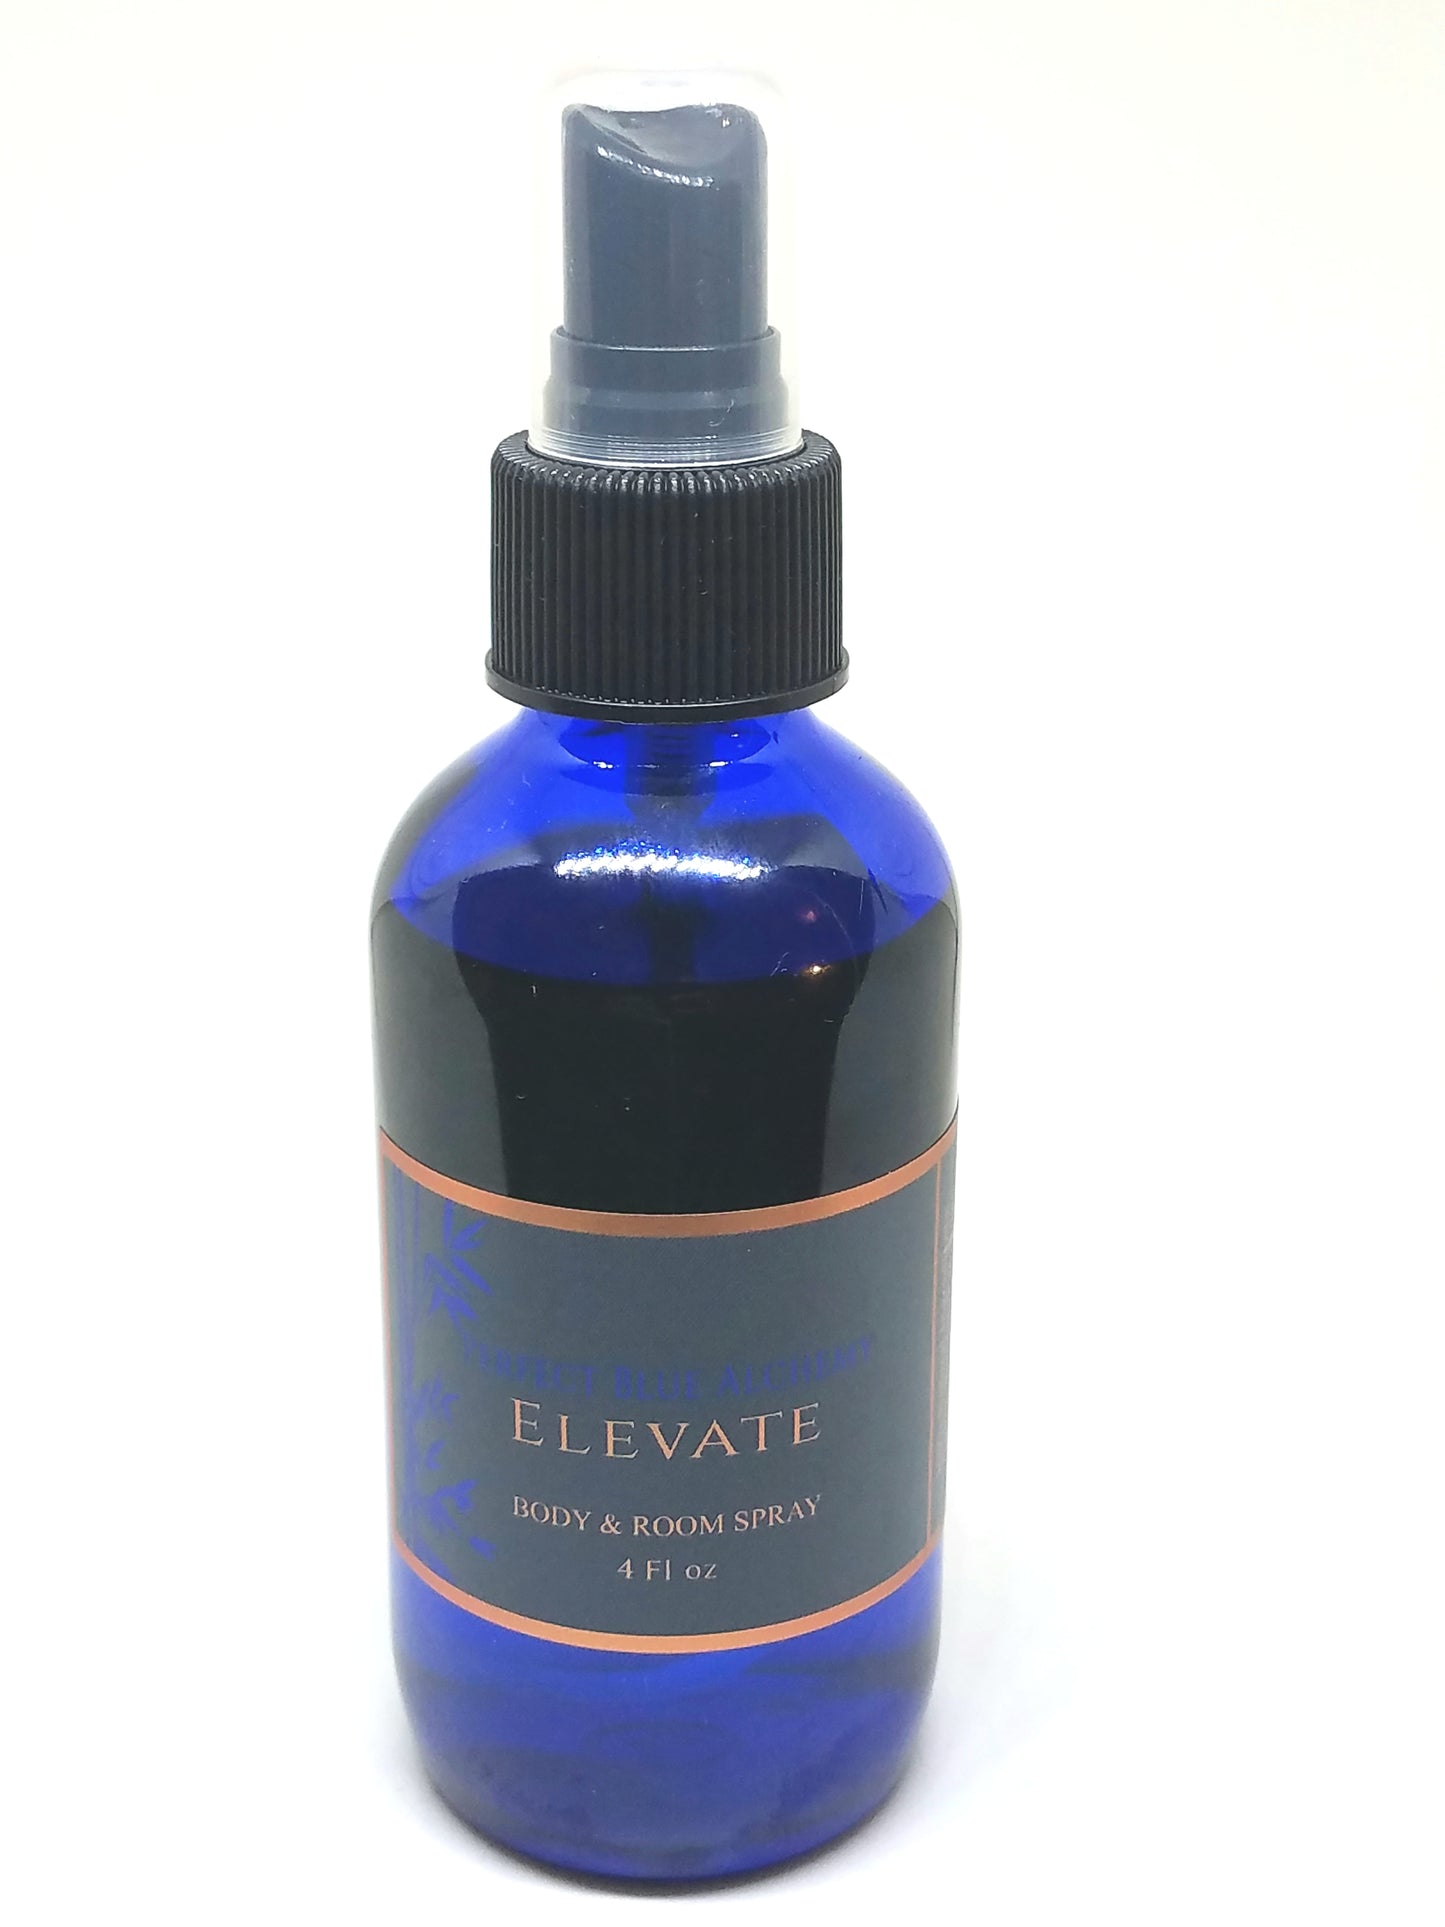 Elevate Perfume Body & Room Spray